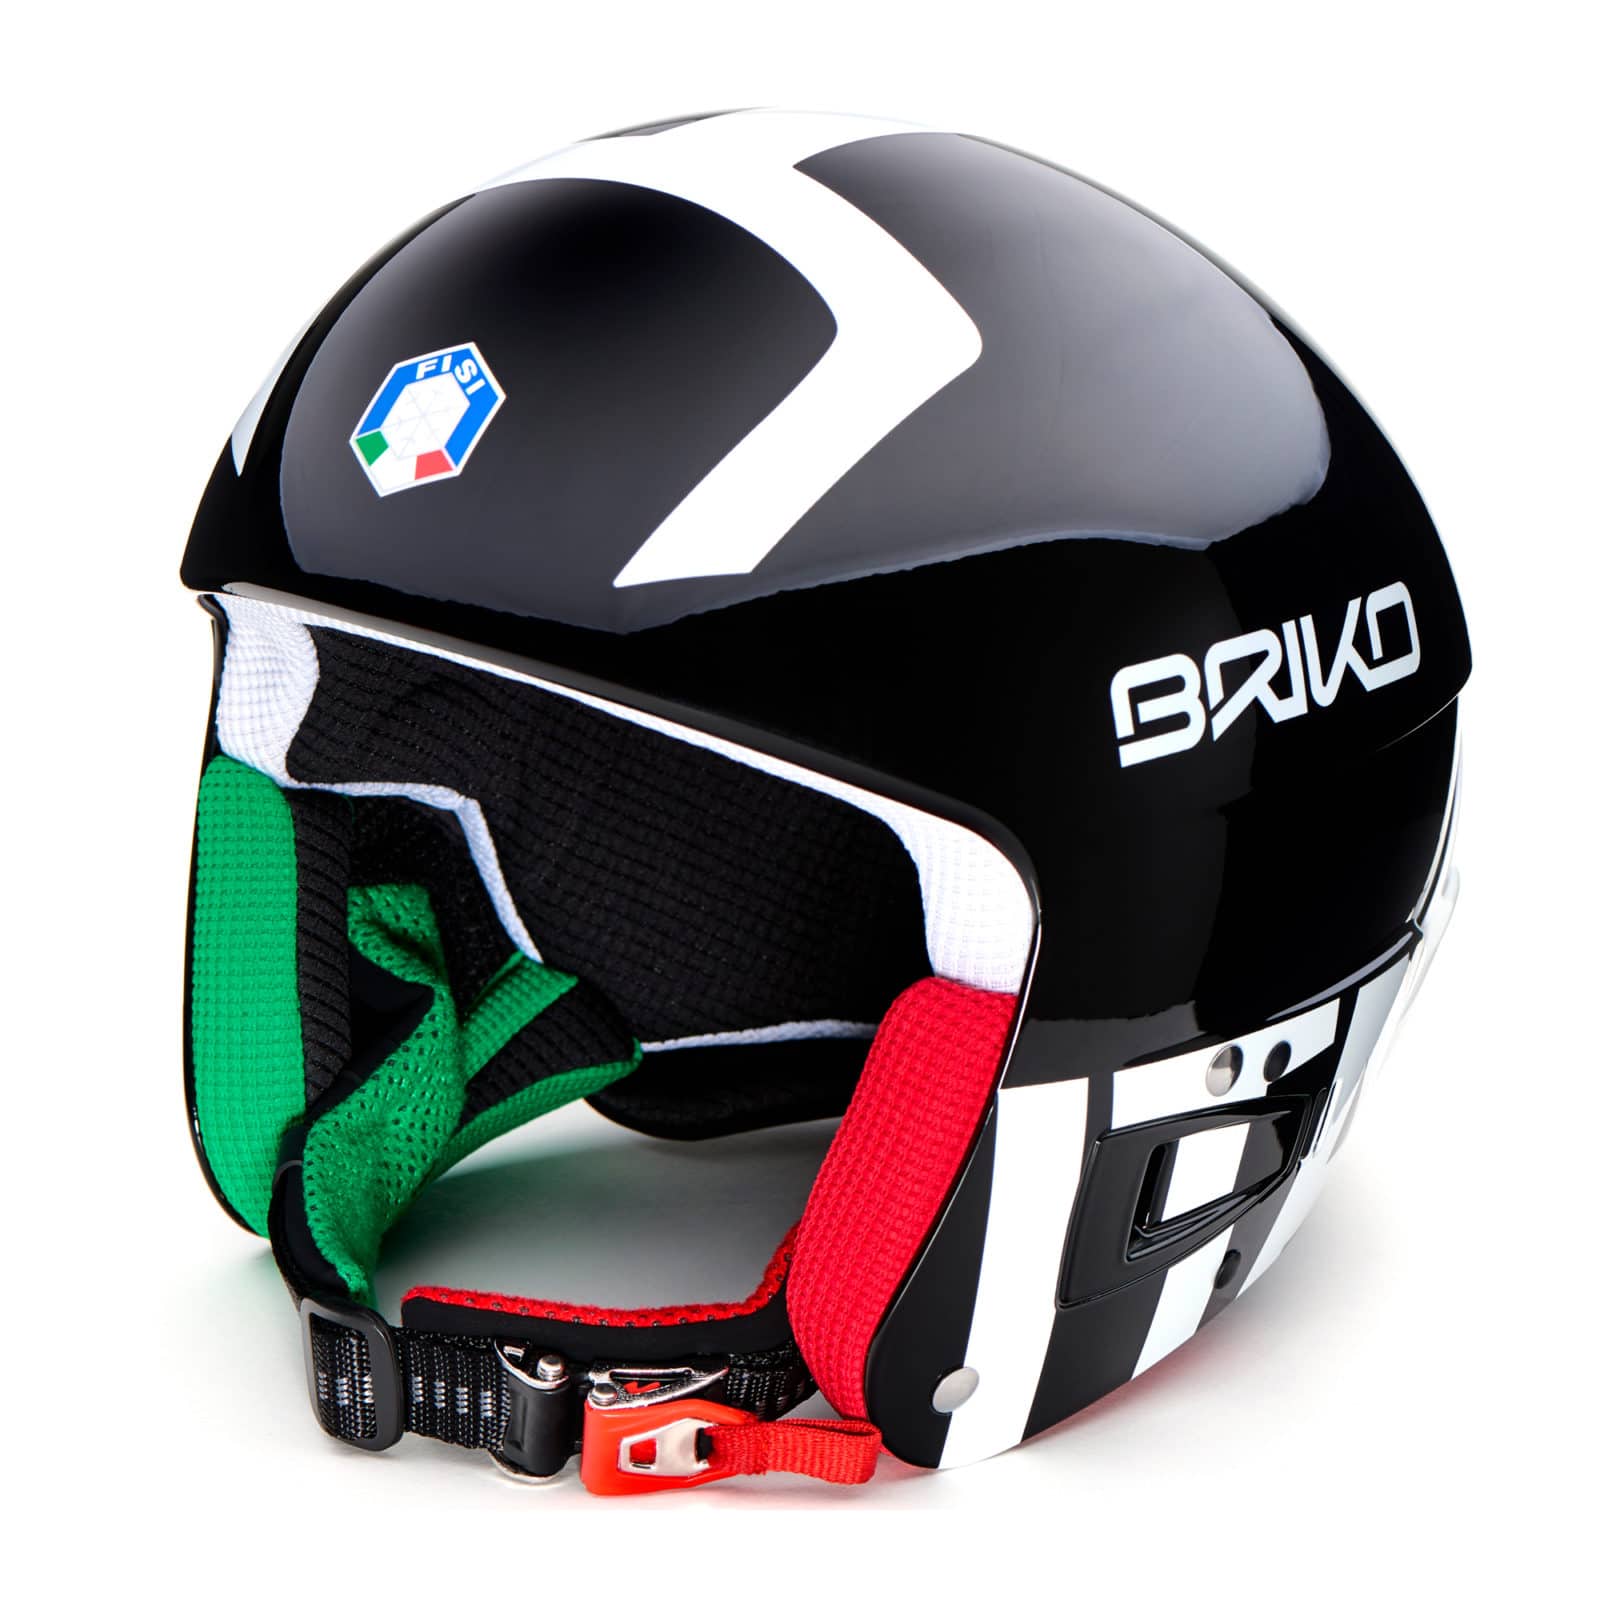 Купить горнолыжный шлем в москве. Briko Vulcano Fis 6.8. Шлем горнолыжный Briko Fis. Шлем Briko слалом. Горнолыжный шлем Briko Vulcano.